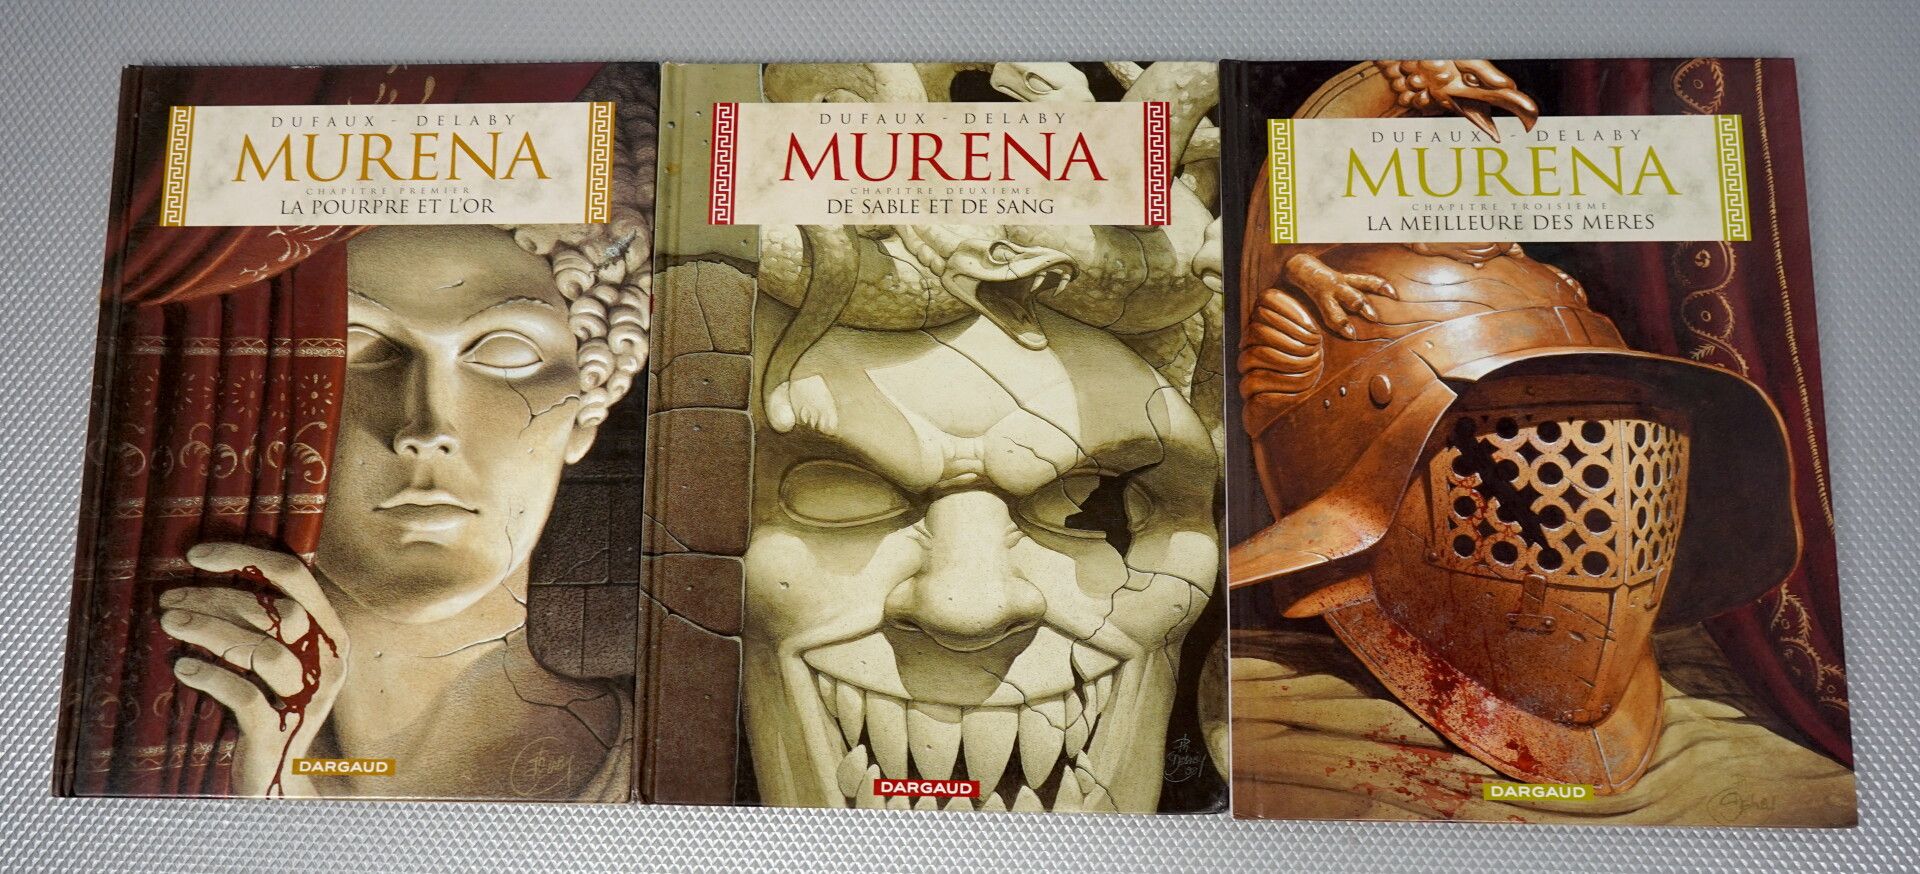 Null MURENA (von Dufaux und Delaby). 9 Alben



Bände 1 bis 9 



Bände 5, 6, 7,&hellip;